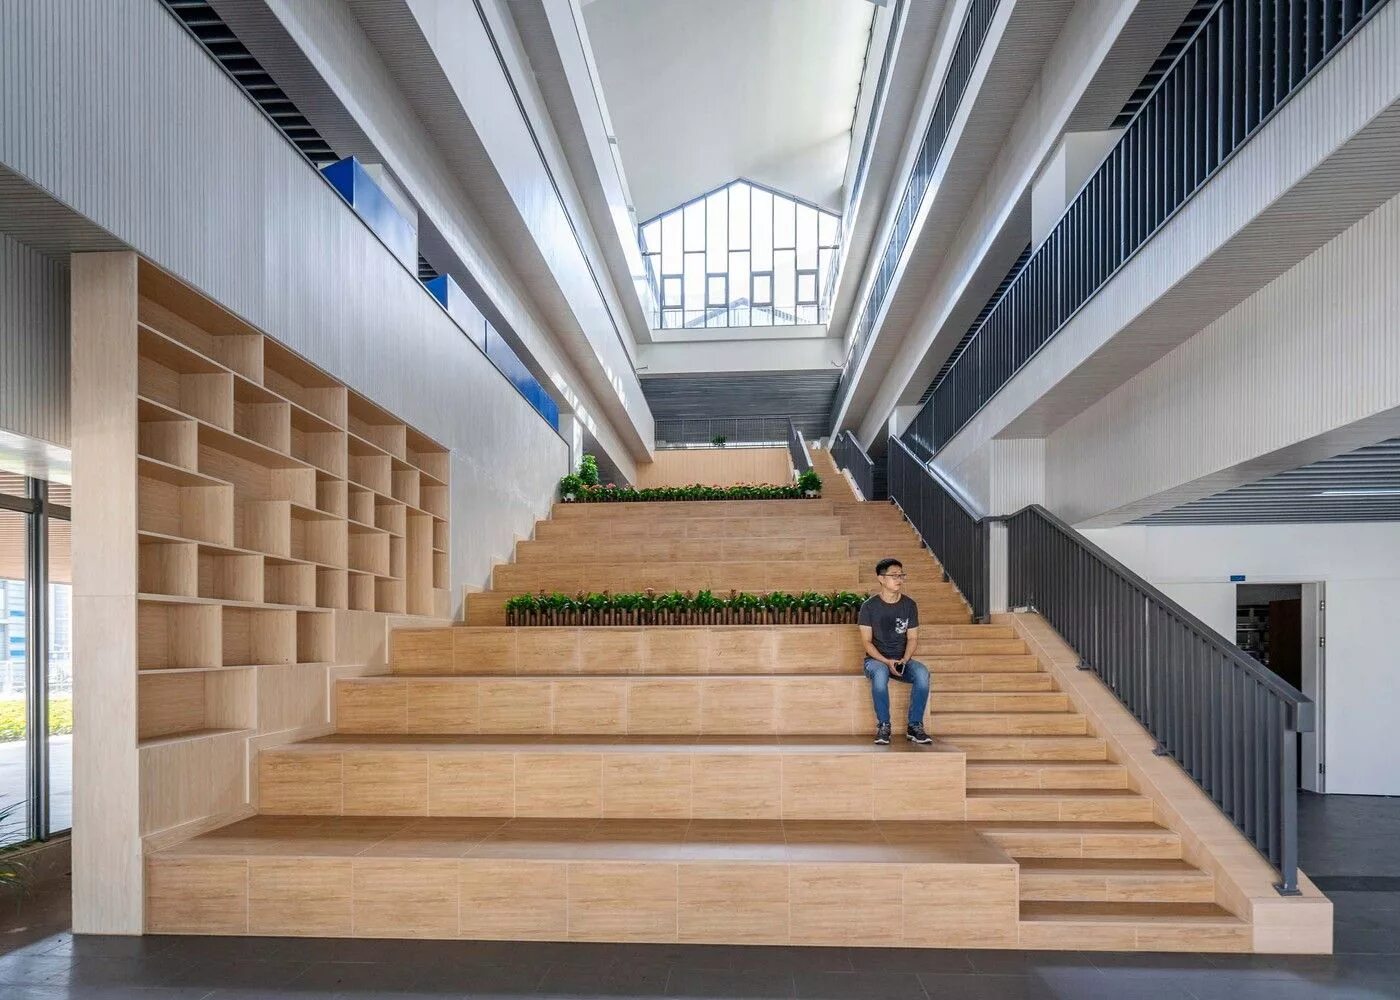 В школе втором этаже. Лестницы Atrium Атриум. Японская школа архитектура. Лестница в современной школе. Красивая лестница в школе.